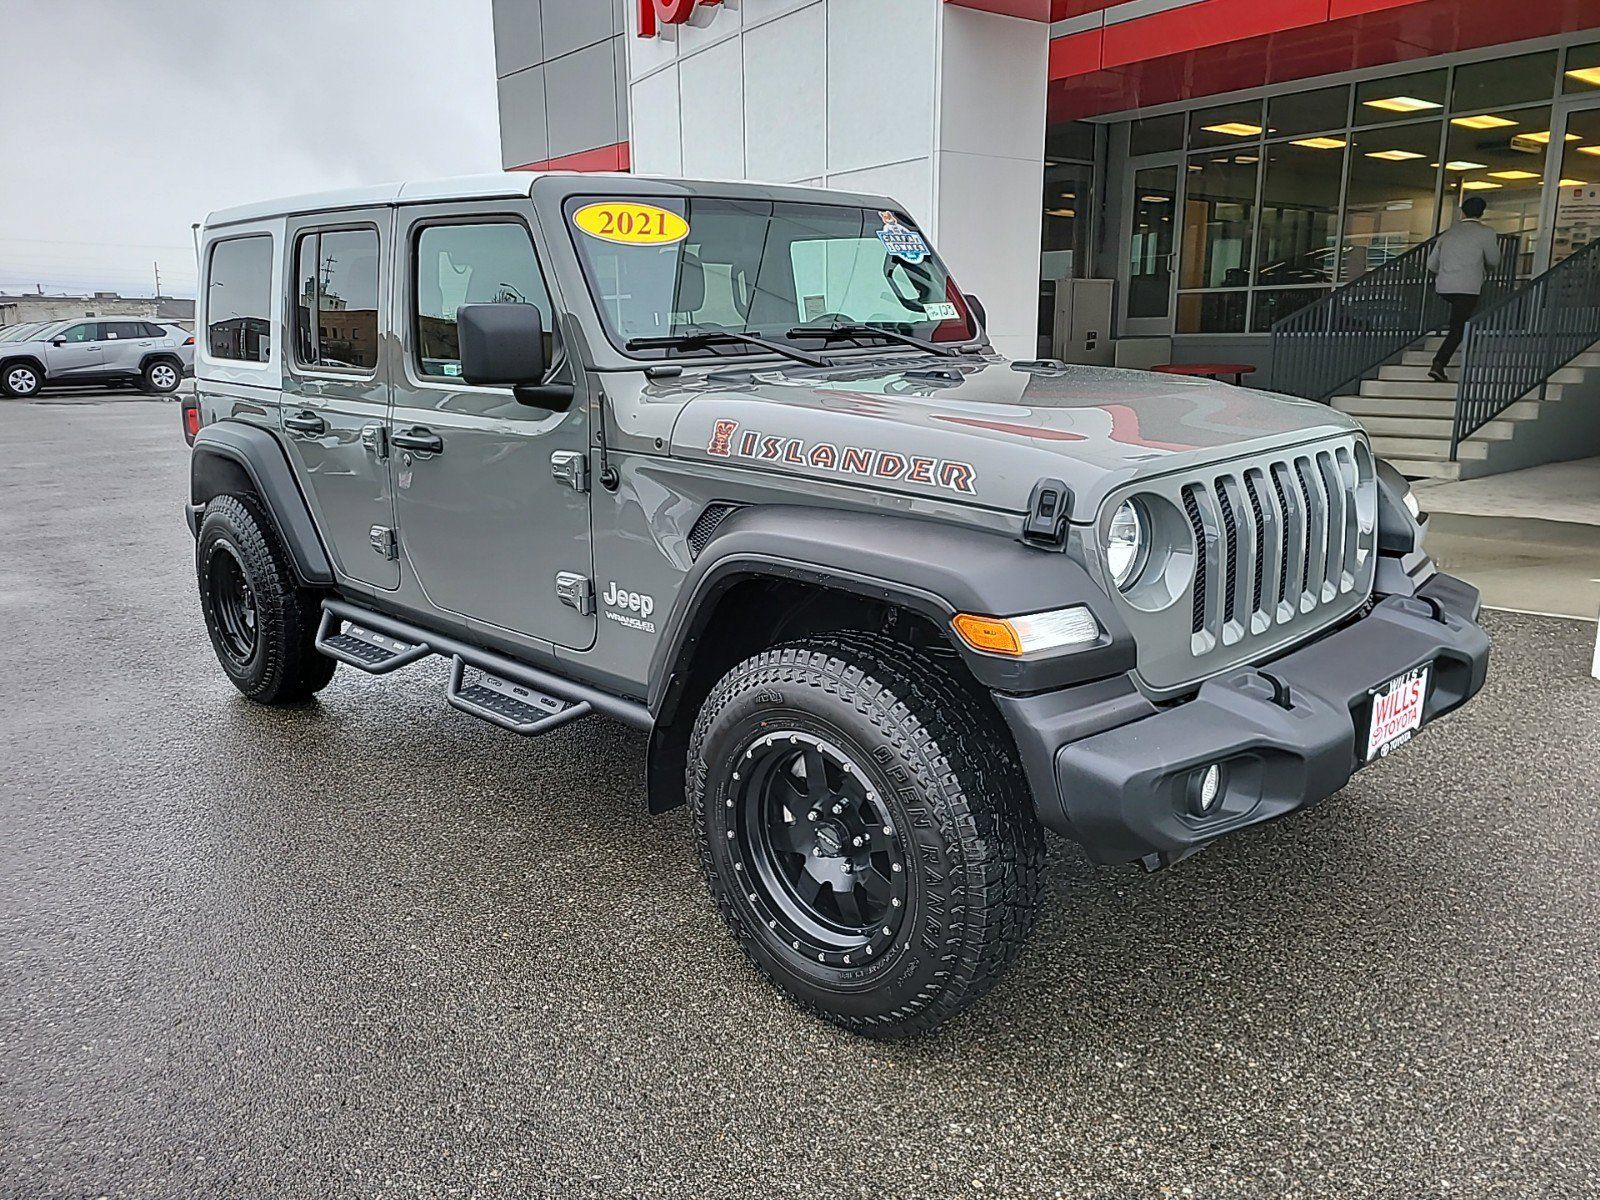 2021 - Jeep - Wrangler - $34,998